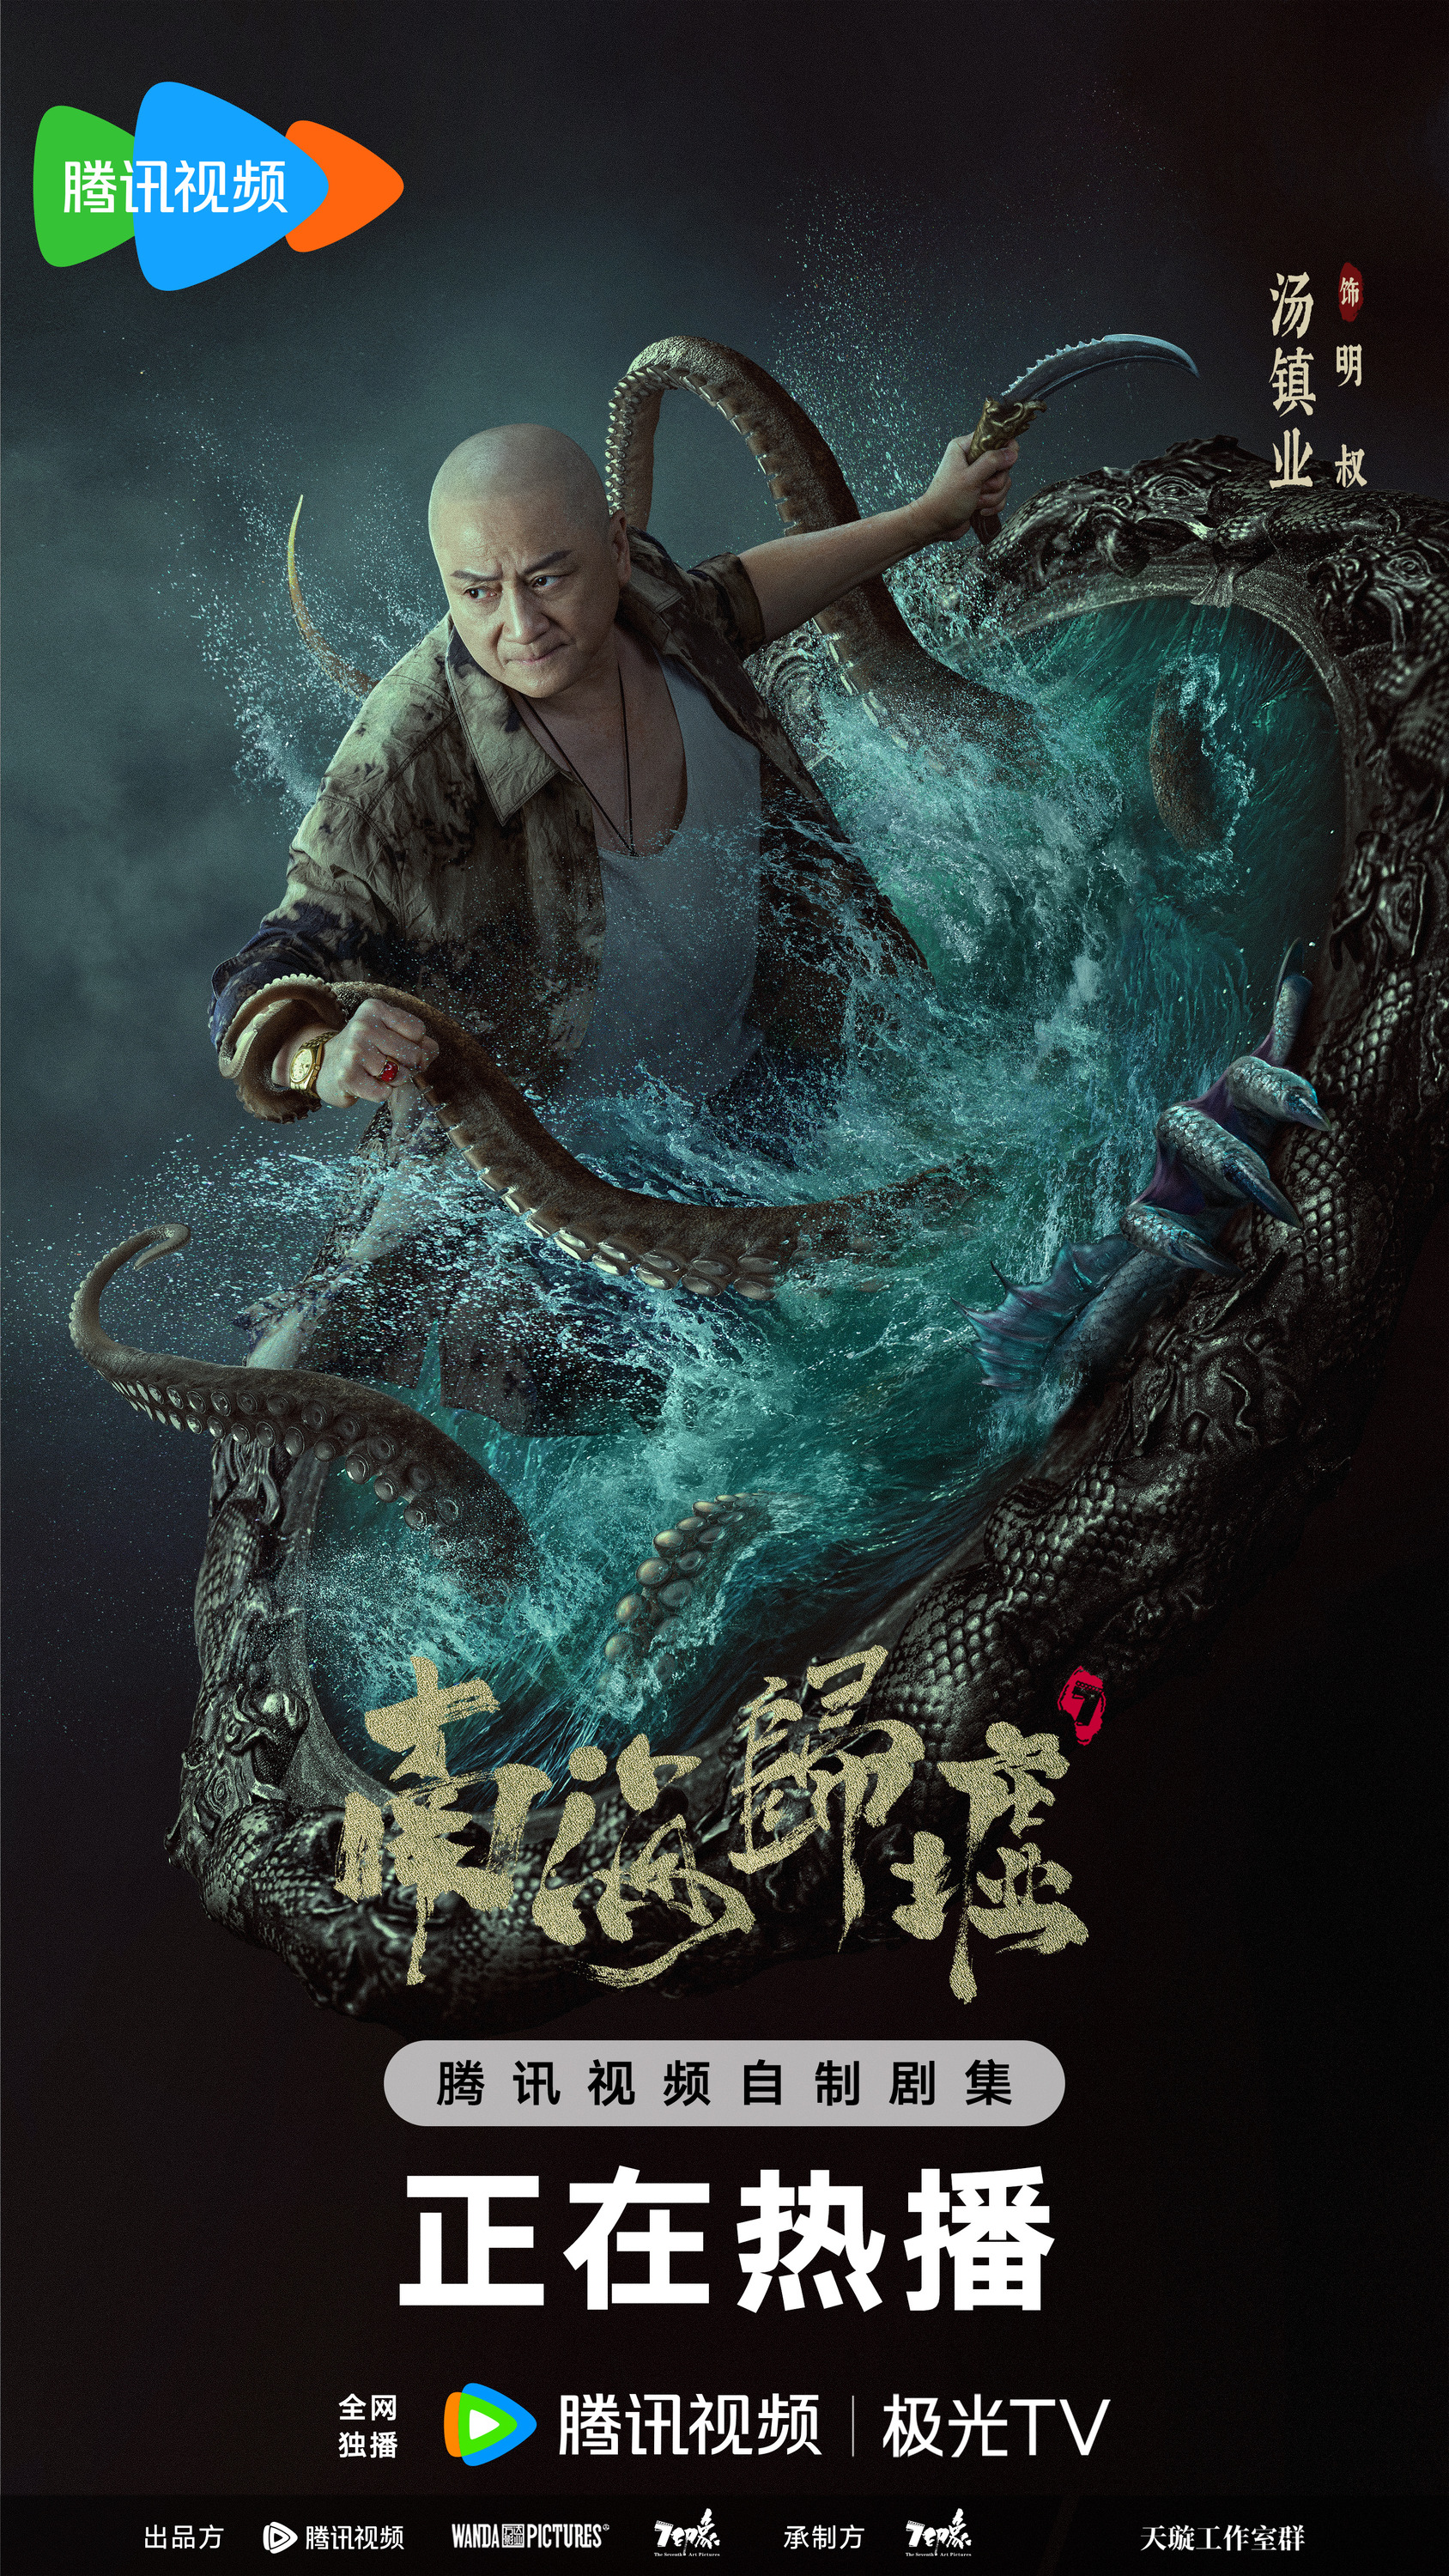 Mega Sized TV Poster Image for Nan hai gui xu (#6 of 6)